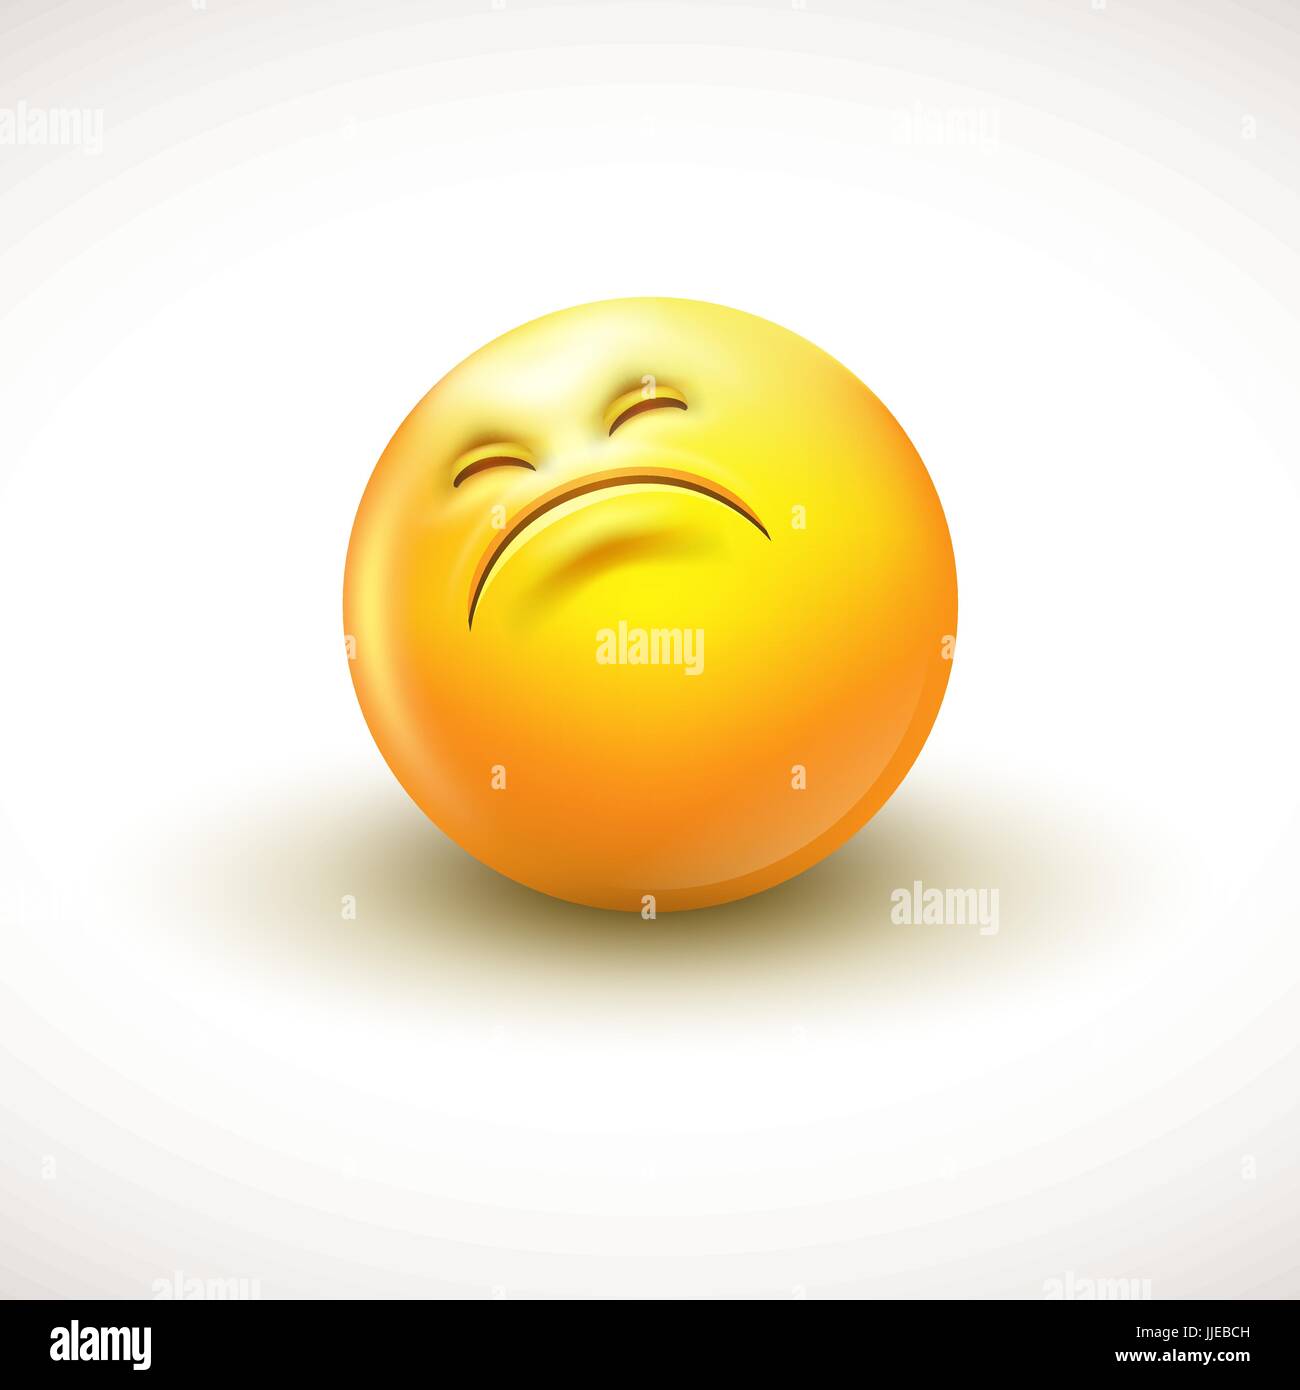 Cute curious emoticon, emoji - vector illustration Stock Vector